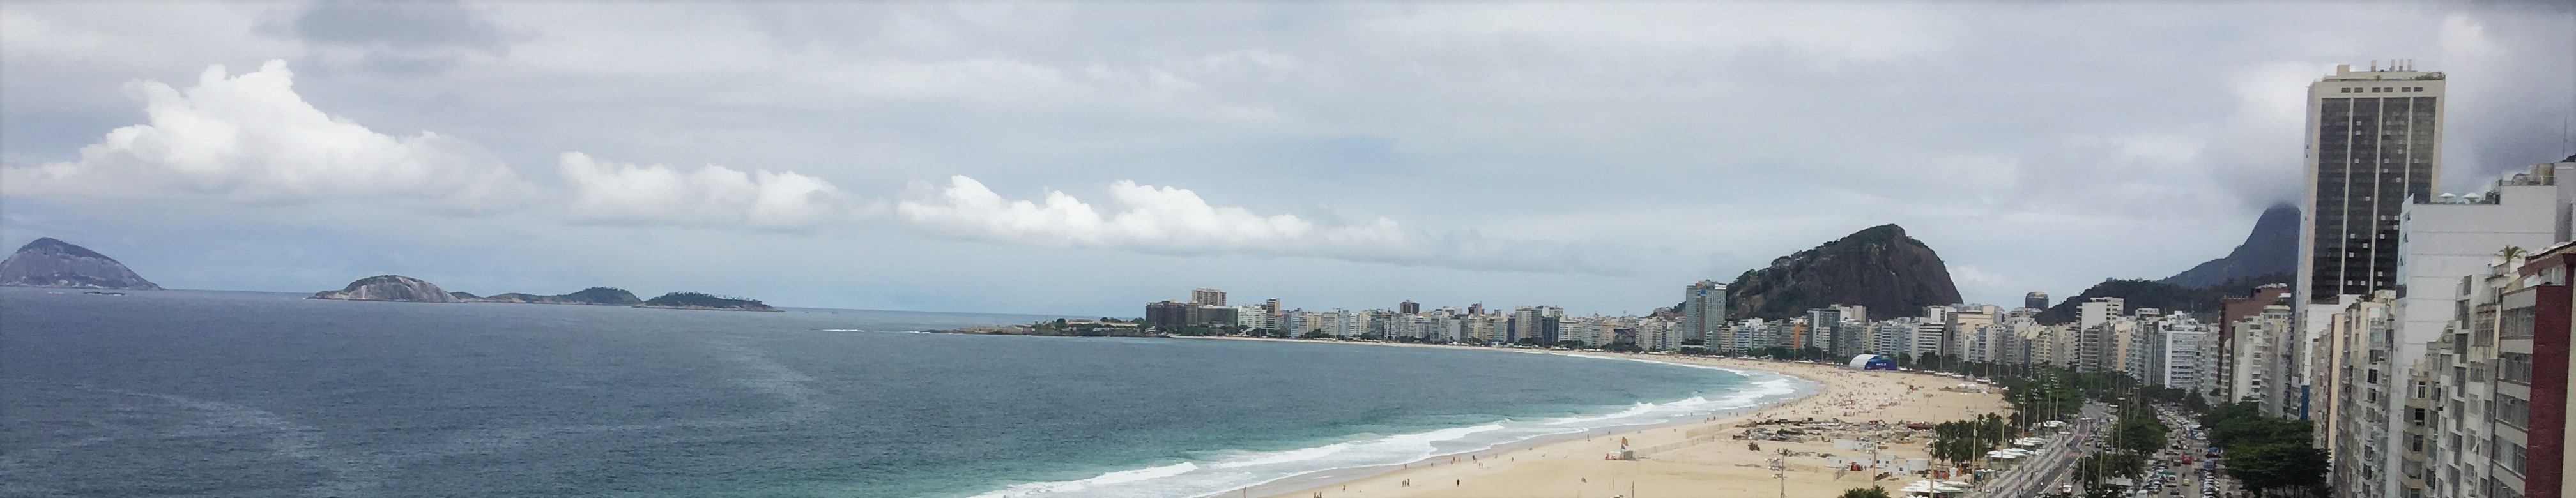 Panoramic view of Copacabana.